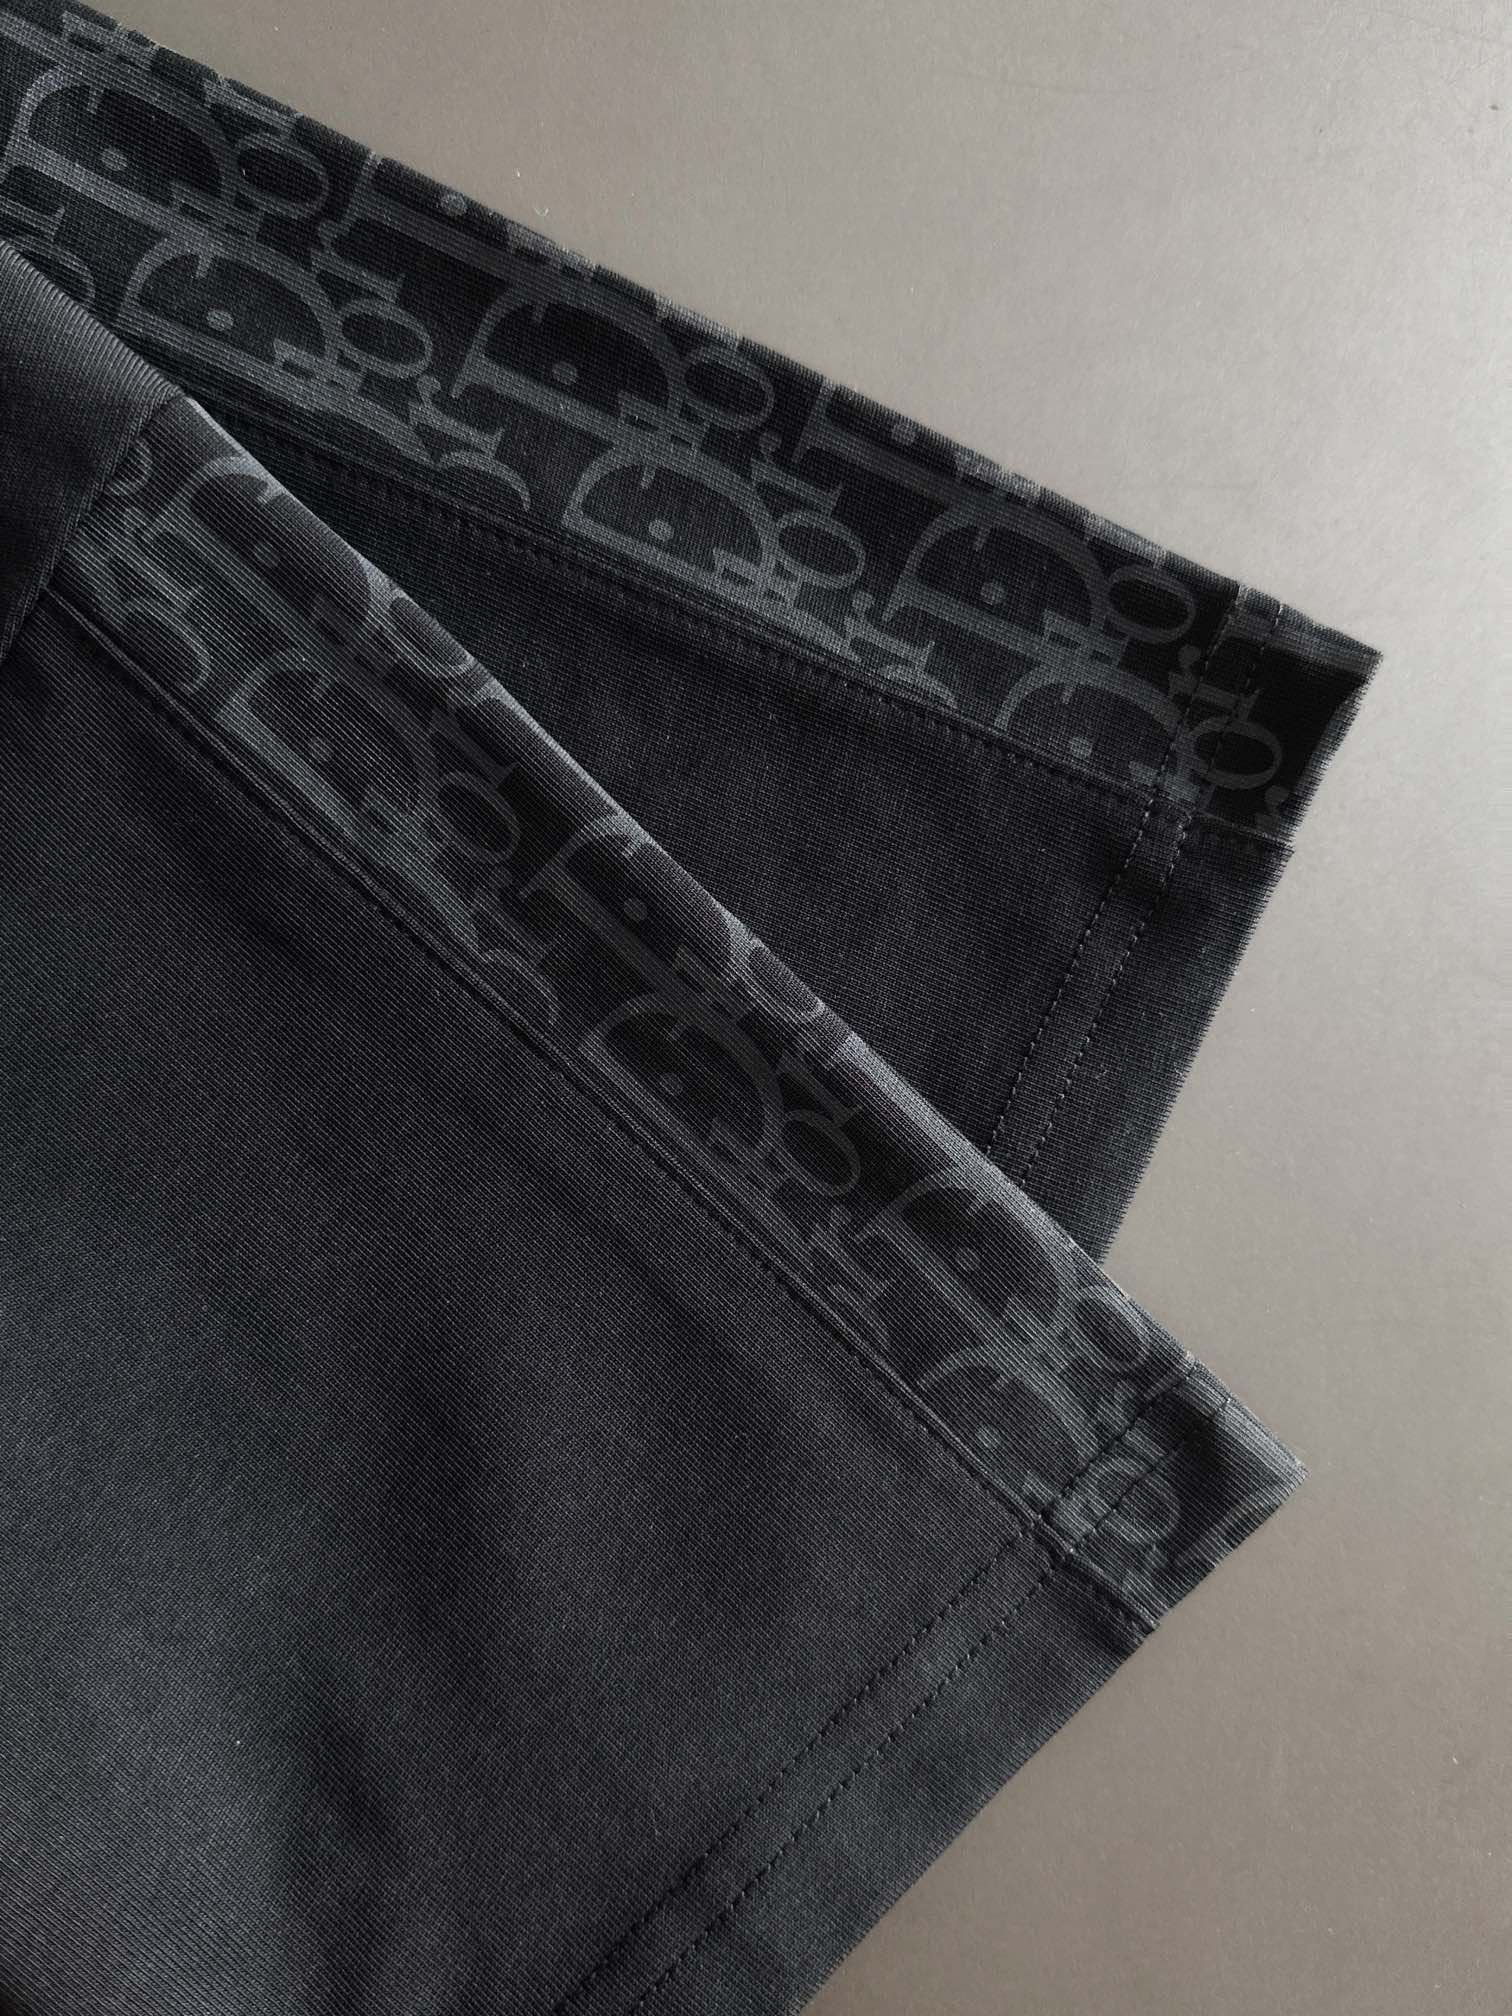 爆買い大得価 ディオール tシャツ激安通販 短袖 品質保証 トップス 純綿 シンプル 人気新品 柔らかい ブラック_3